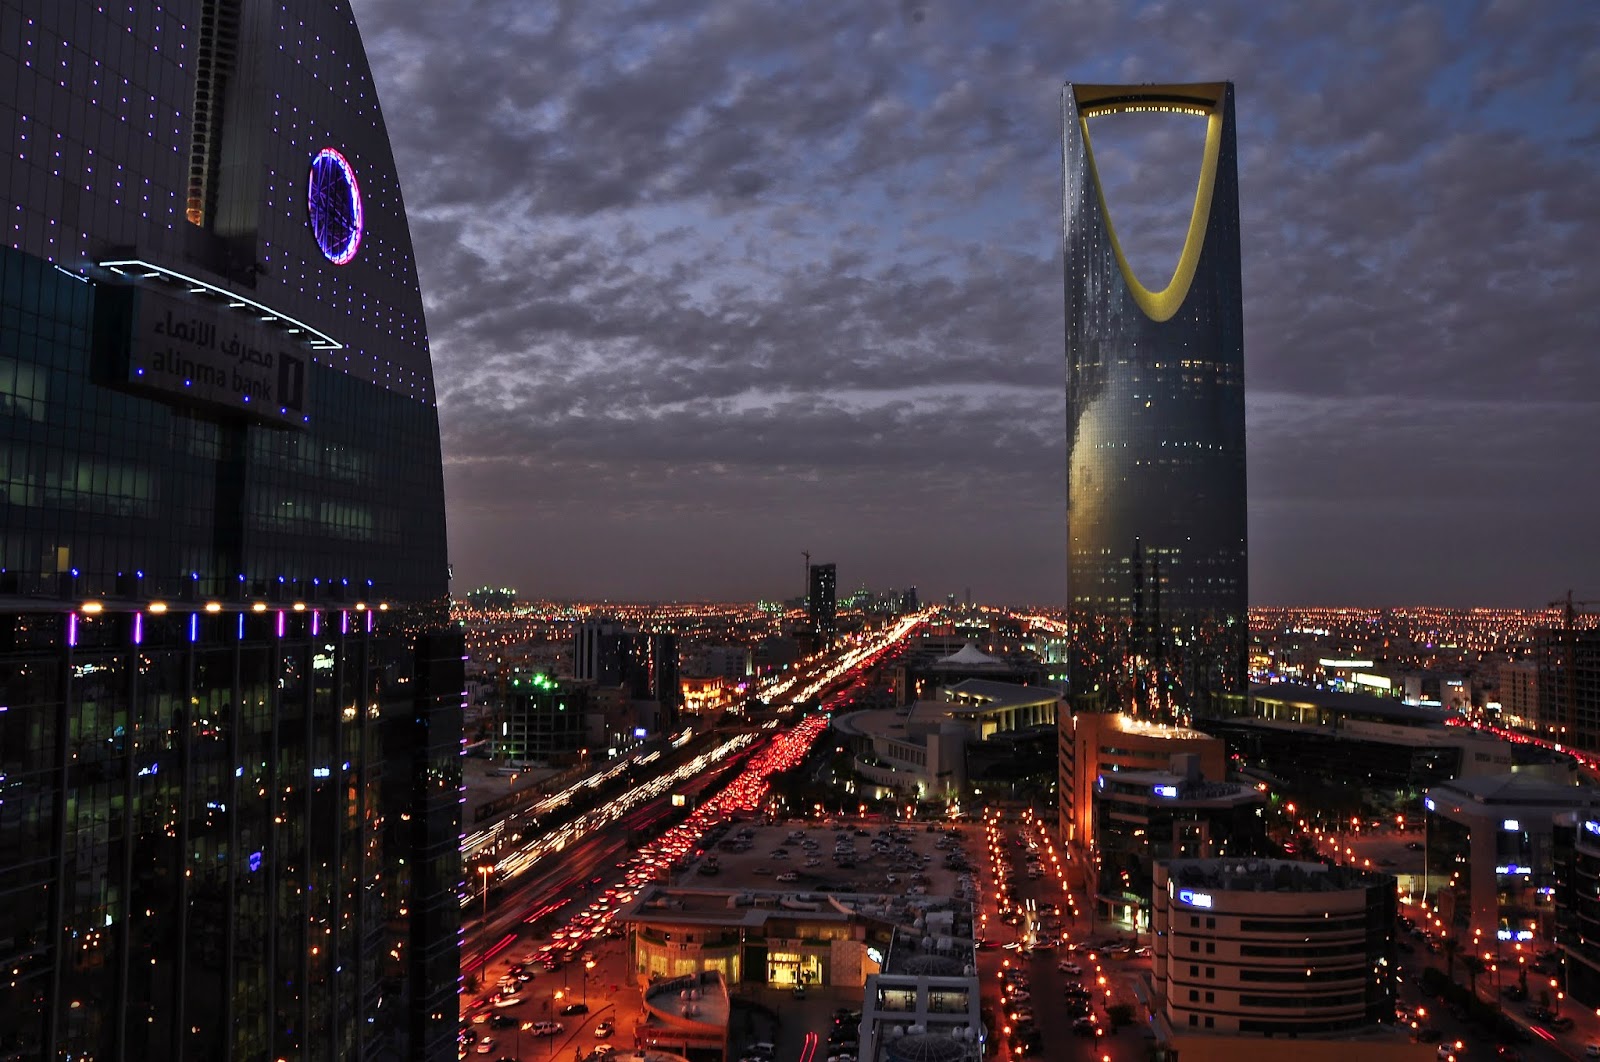 Saudier dömd till 2.000 piskrapp och 10 års fängelse för tweets. Stay